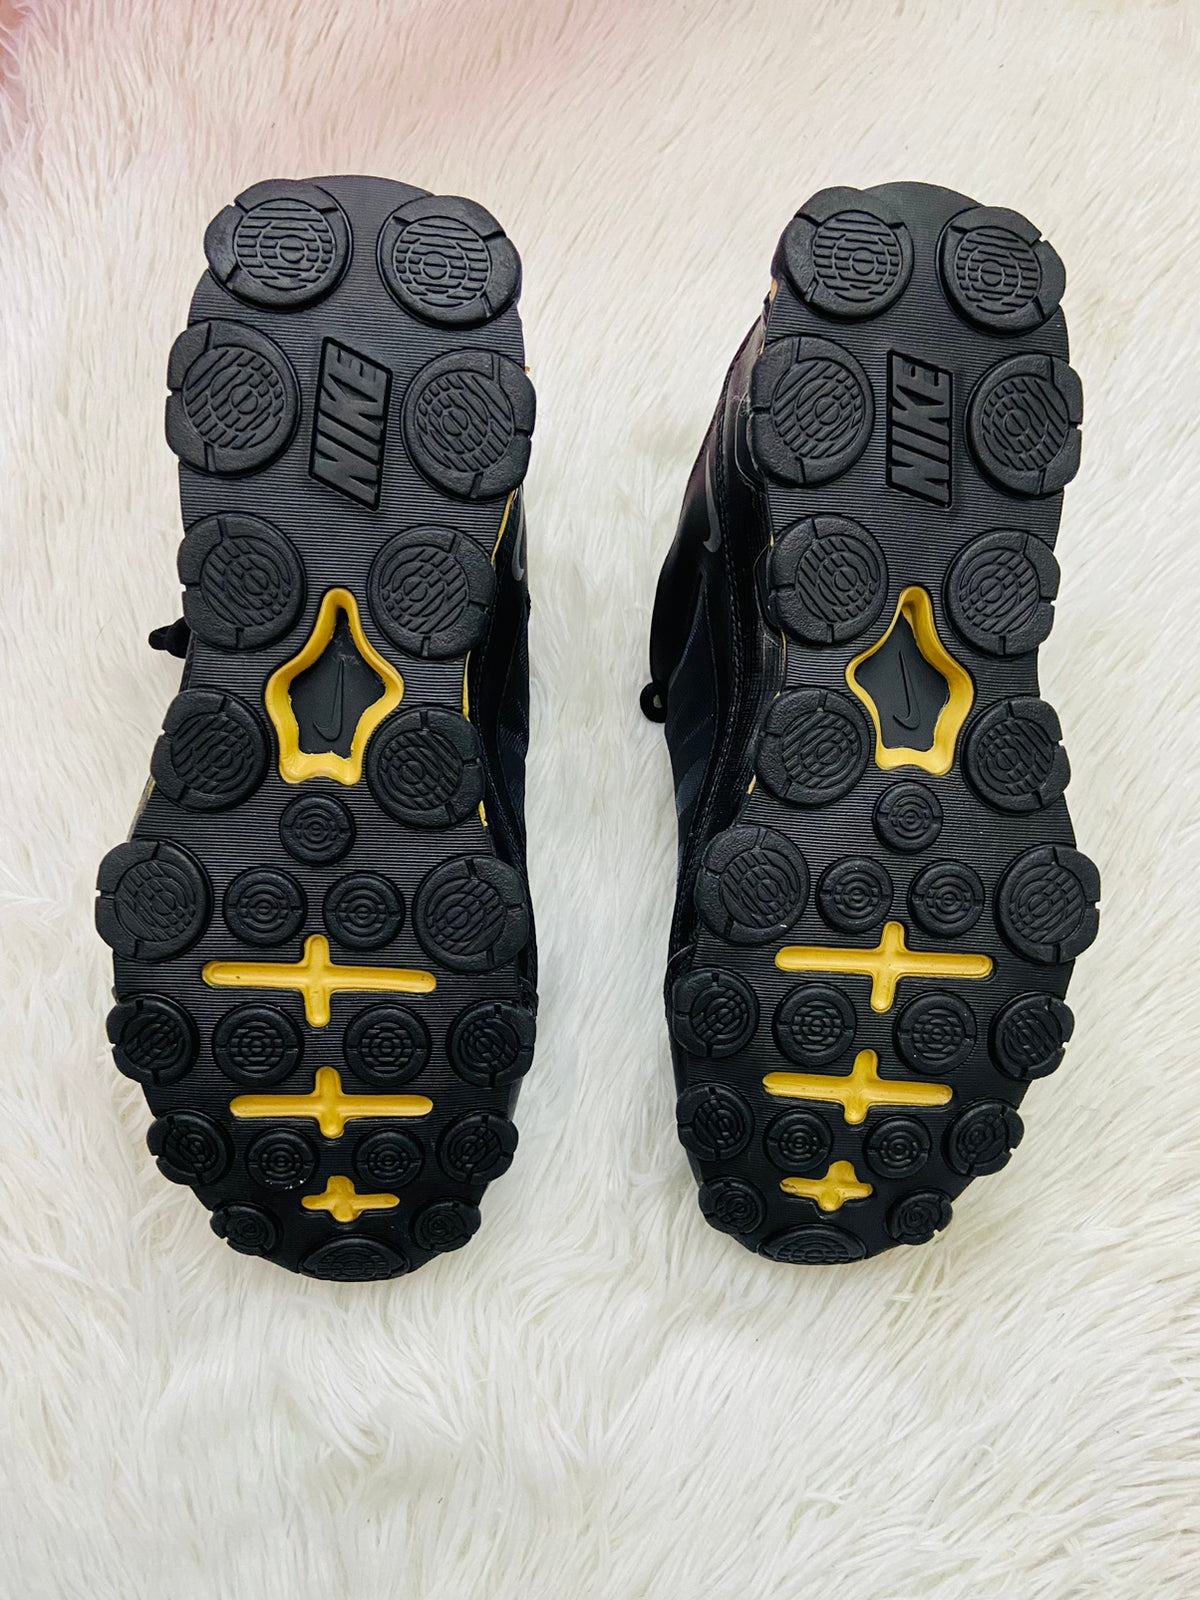 Tenis Nike original negro con letras y logo NIKE al frente y a los lados en color amarillo en la parte de abajo